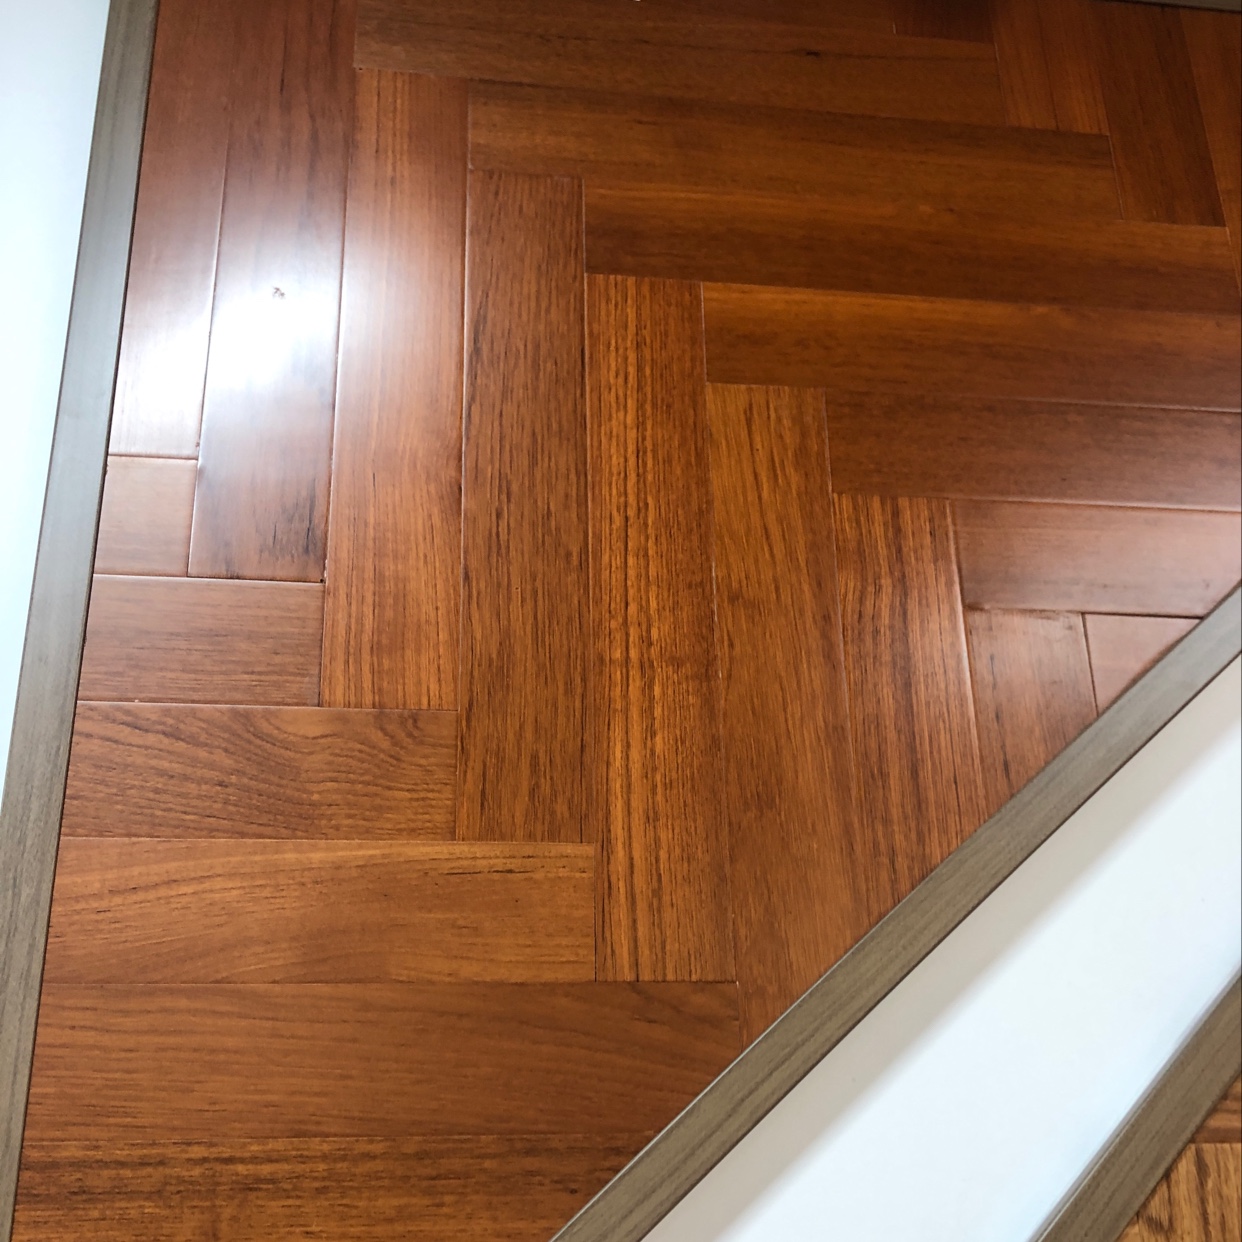 柚木北欧美式风格大自然原木色客厅卧室家用原木实木地板强化复合木地板详情图1